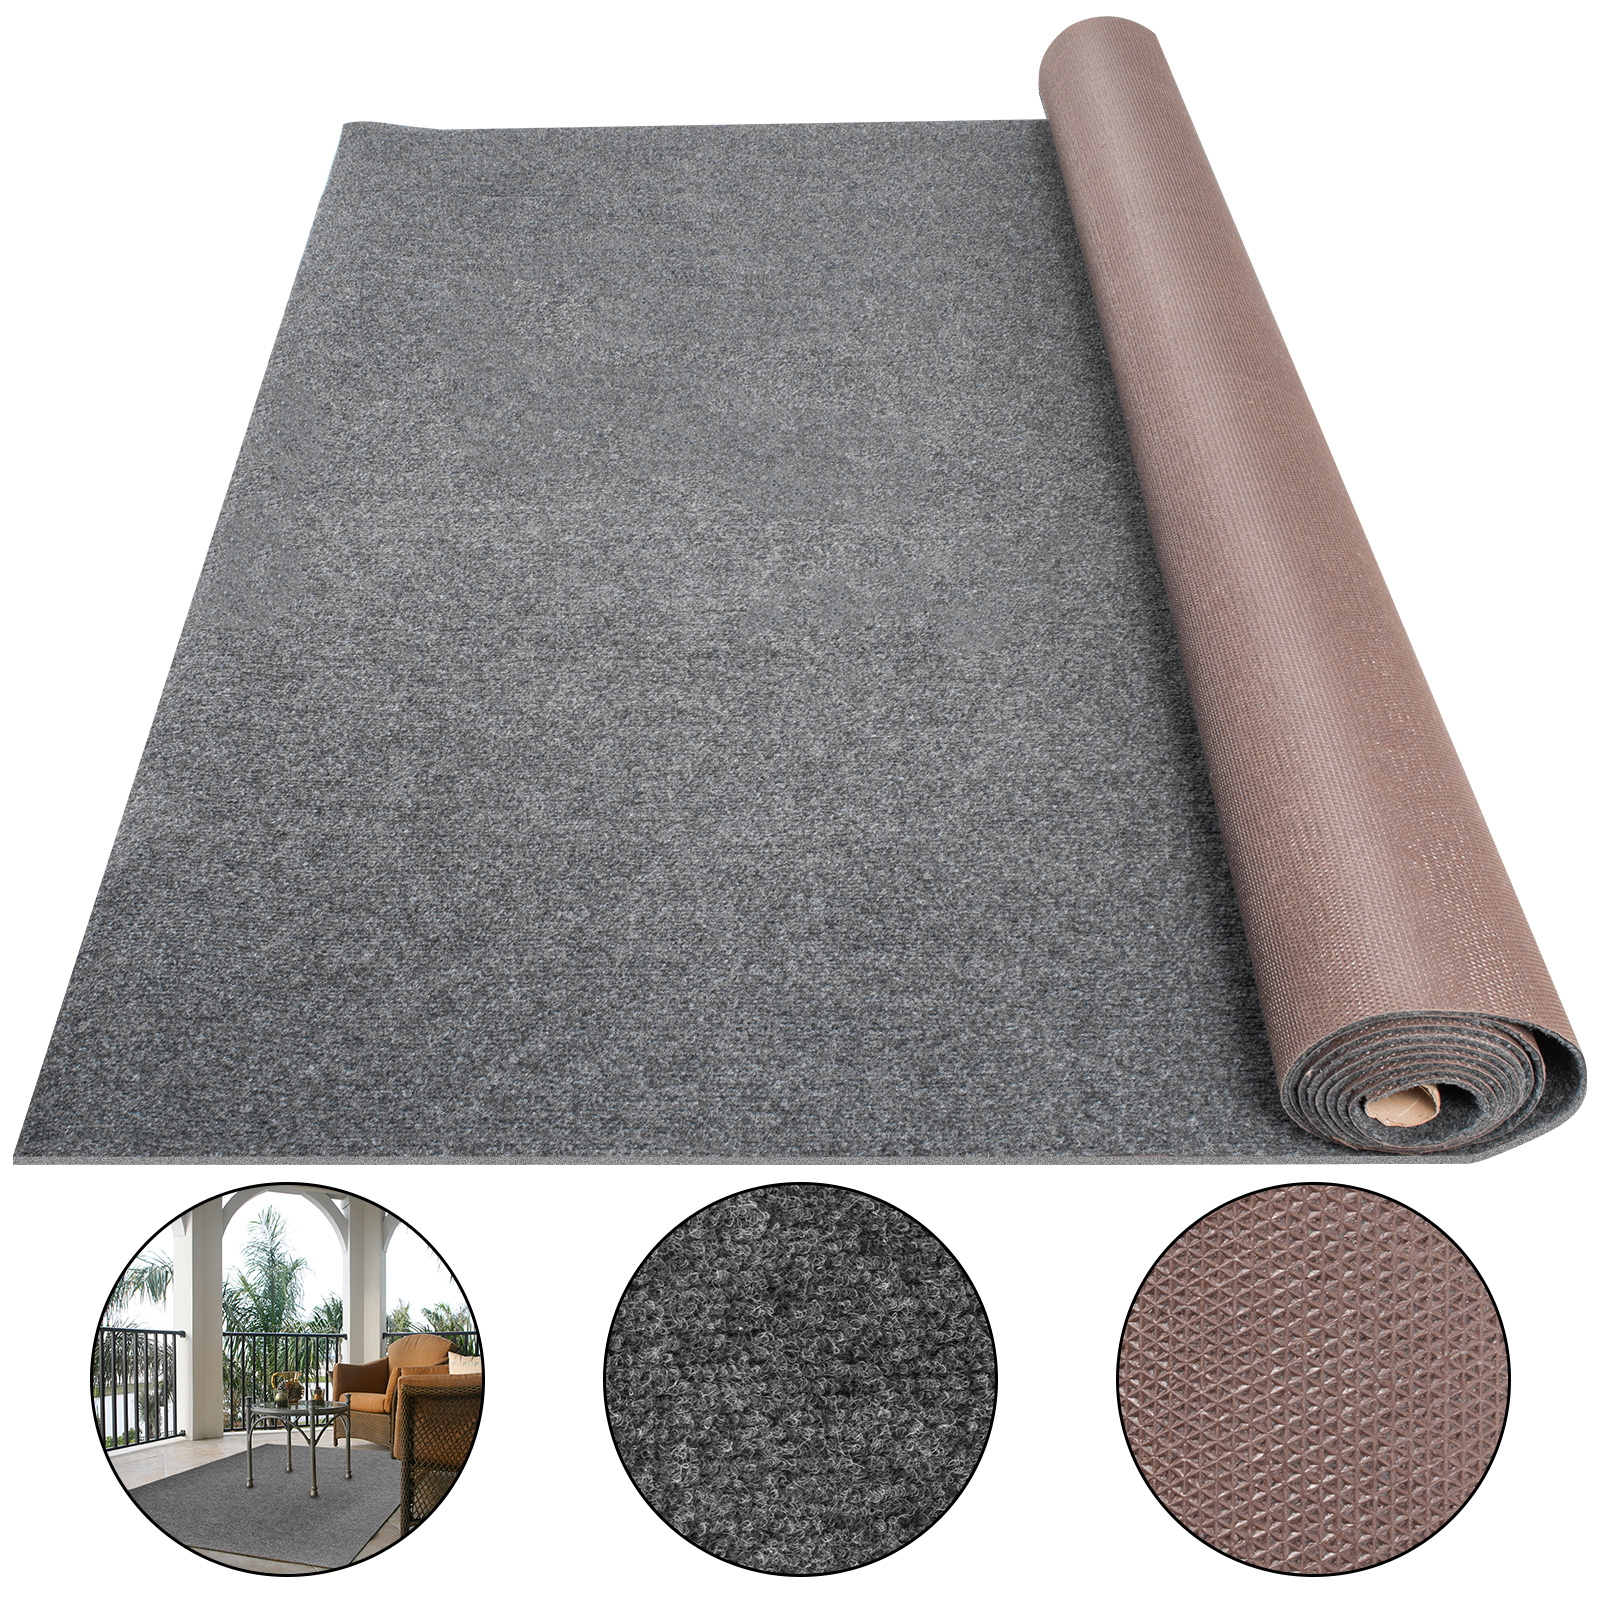 Vevor Boat Carpet Marine Carpet 6x13' Indoor Outdoor Carpet Rug Anti-slide Gray от Vevor Many GEOs